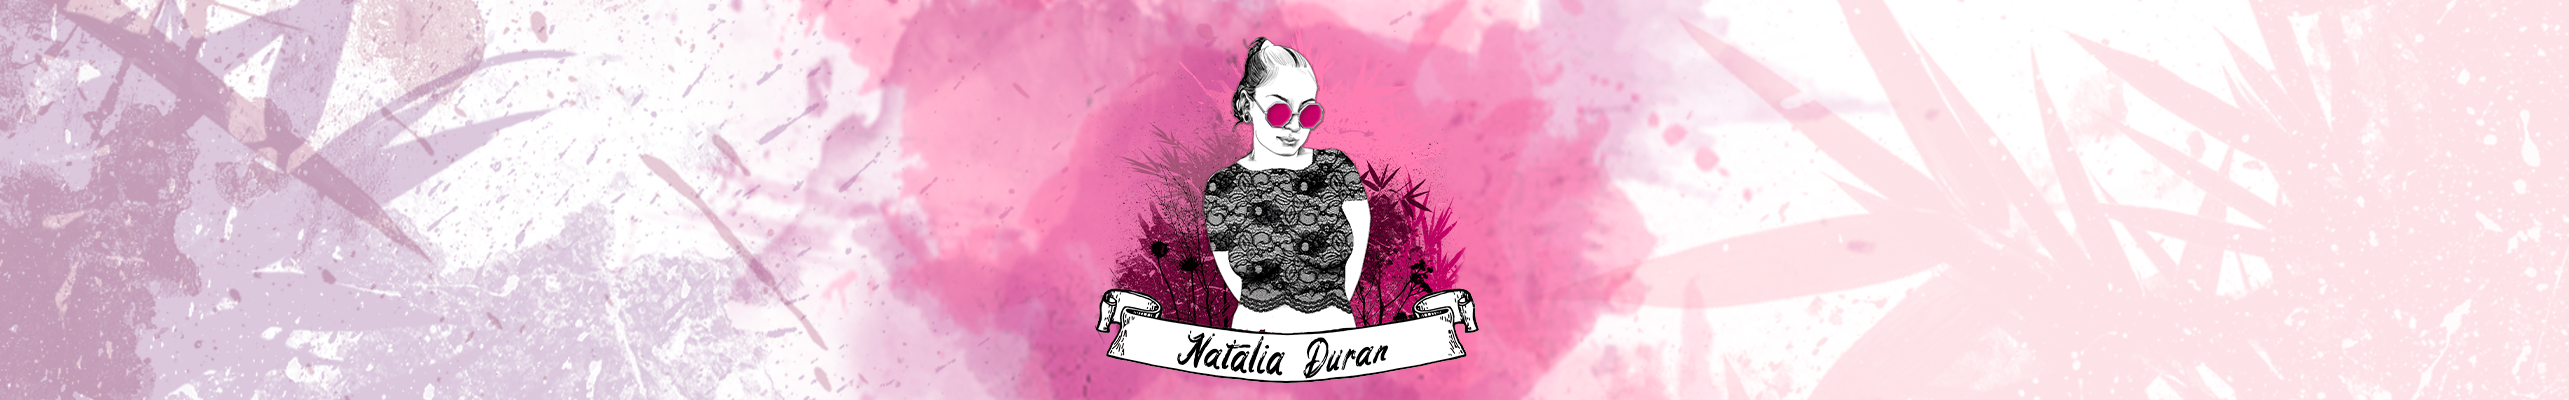 Natalia Duran's profile banner